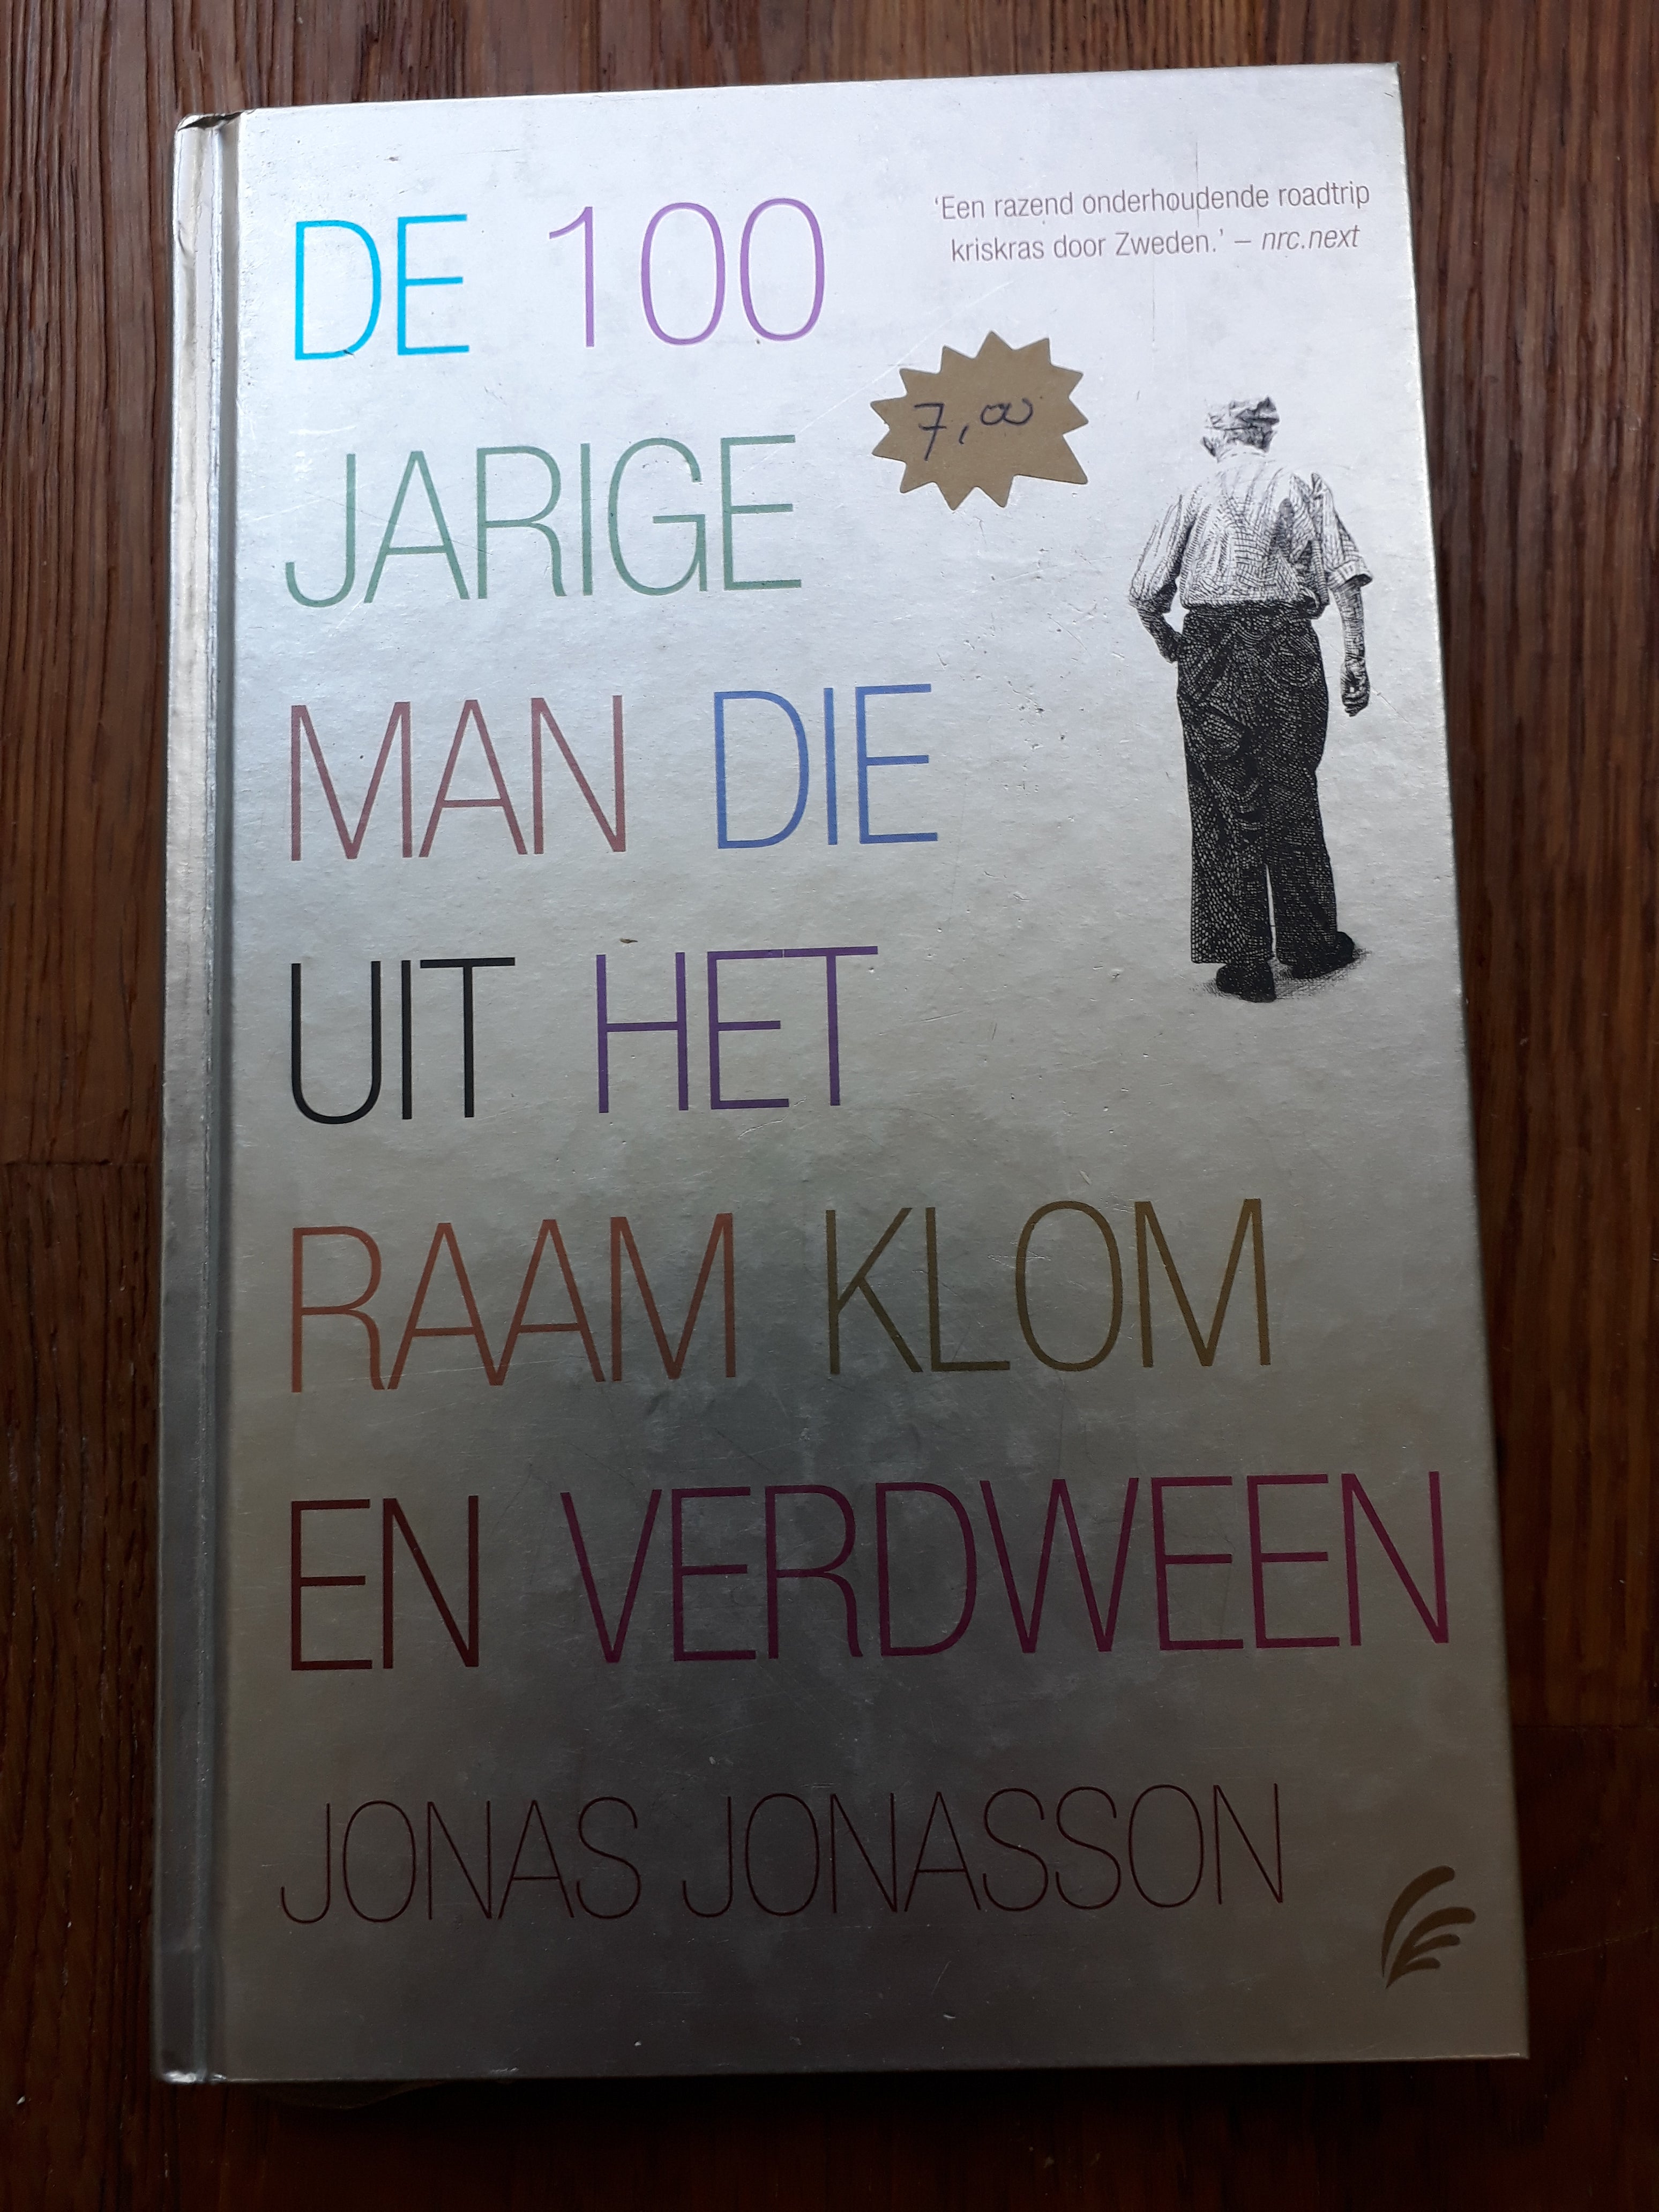 Jonas Jonasson - De 100 jarige man die uit het raam klom en verdween - 2dehands